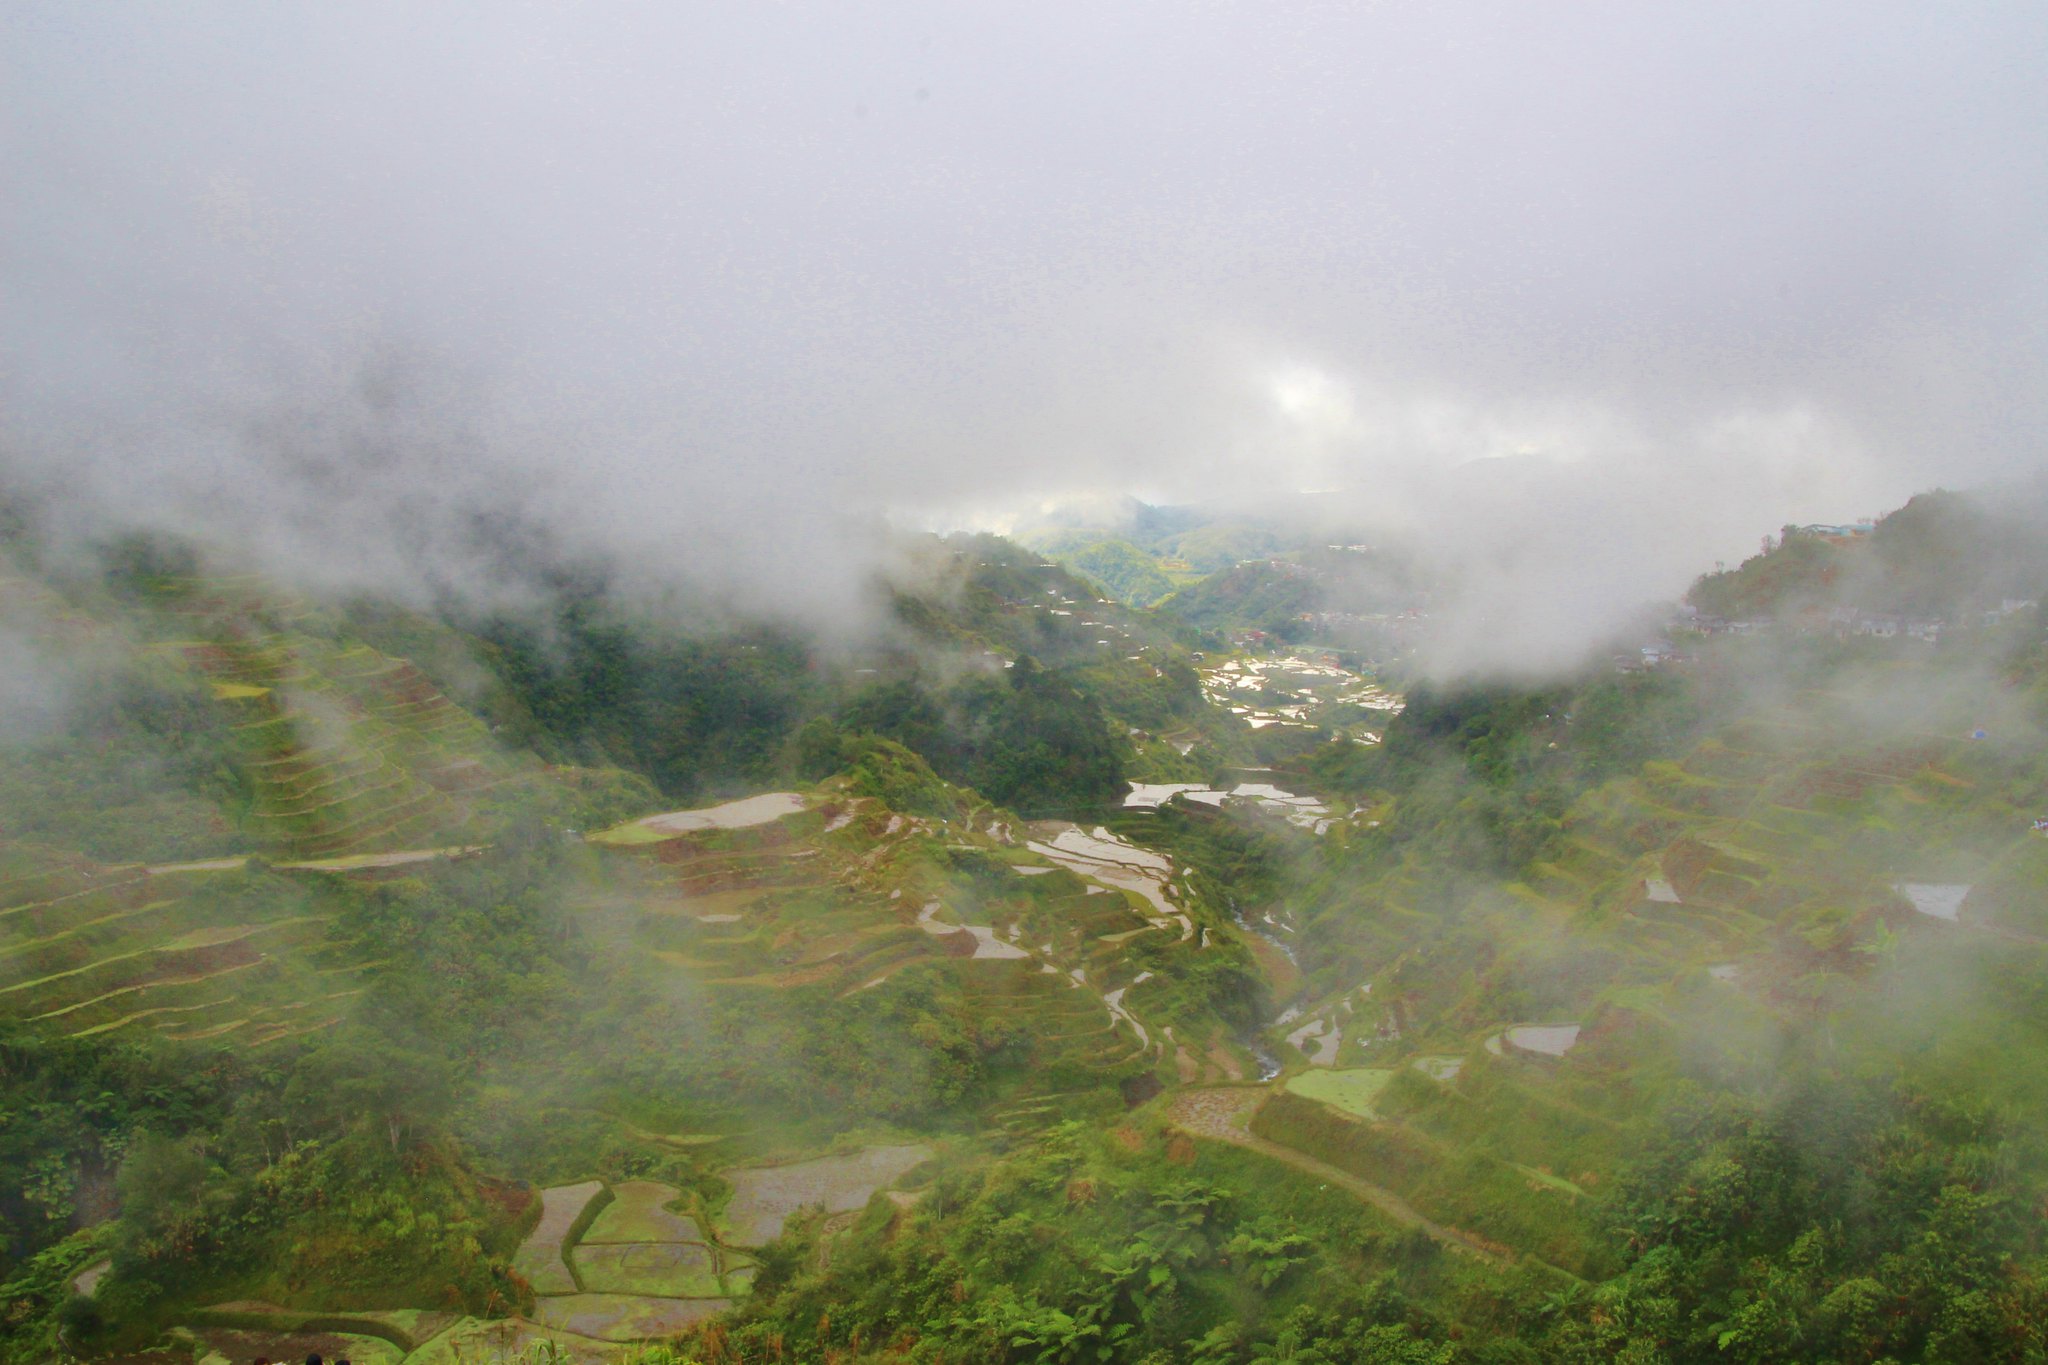 Philippines Mountains Region